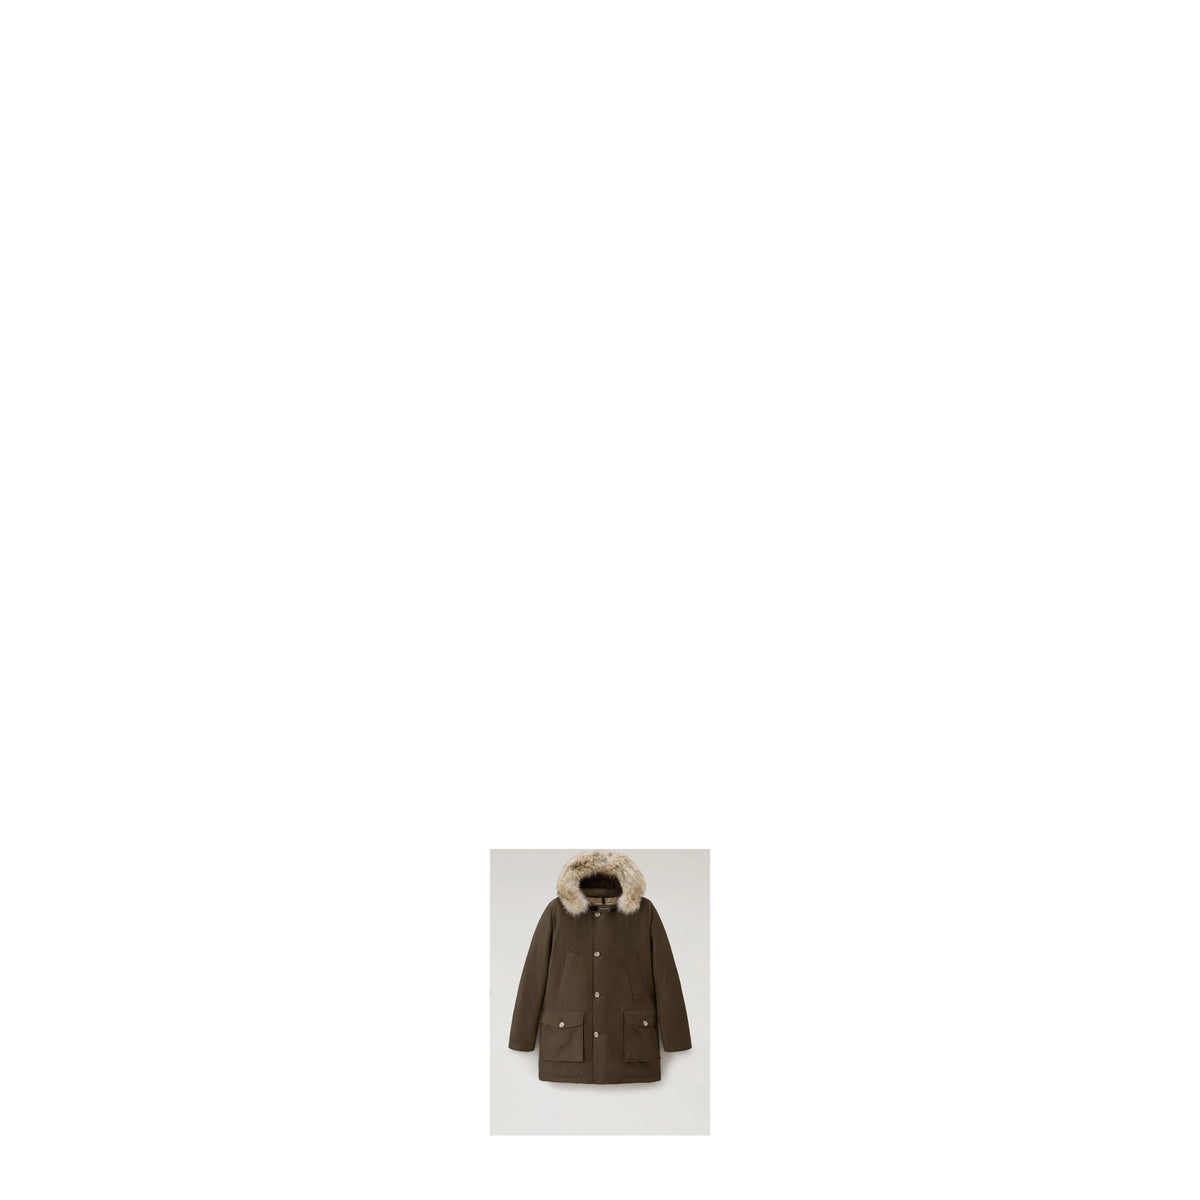 Woolrich Idee regalo jacket artic parka Uomo Cotone Verde Verde Scuro